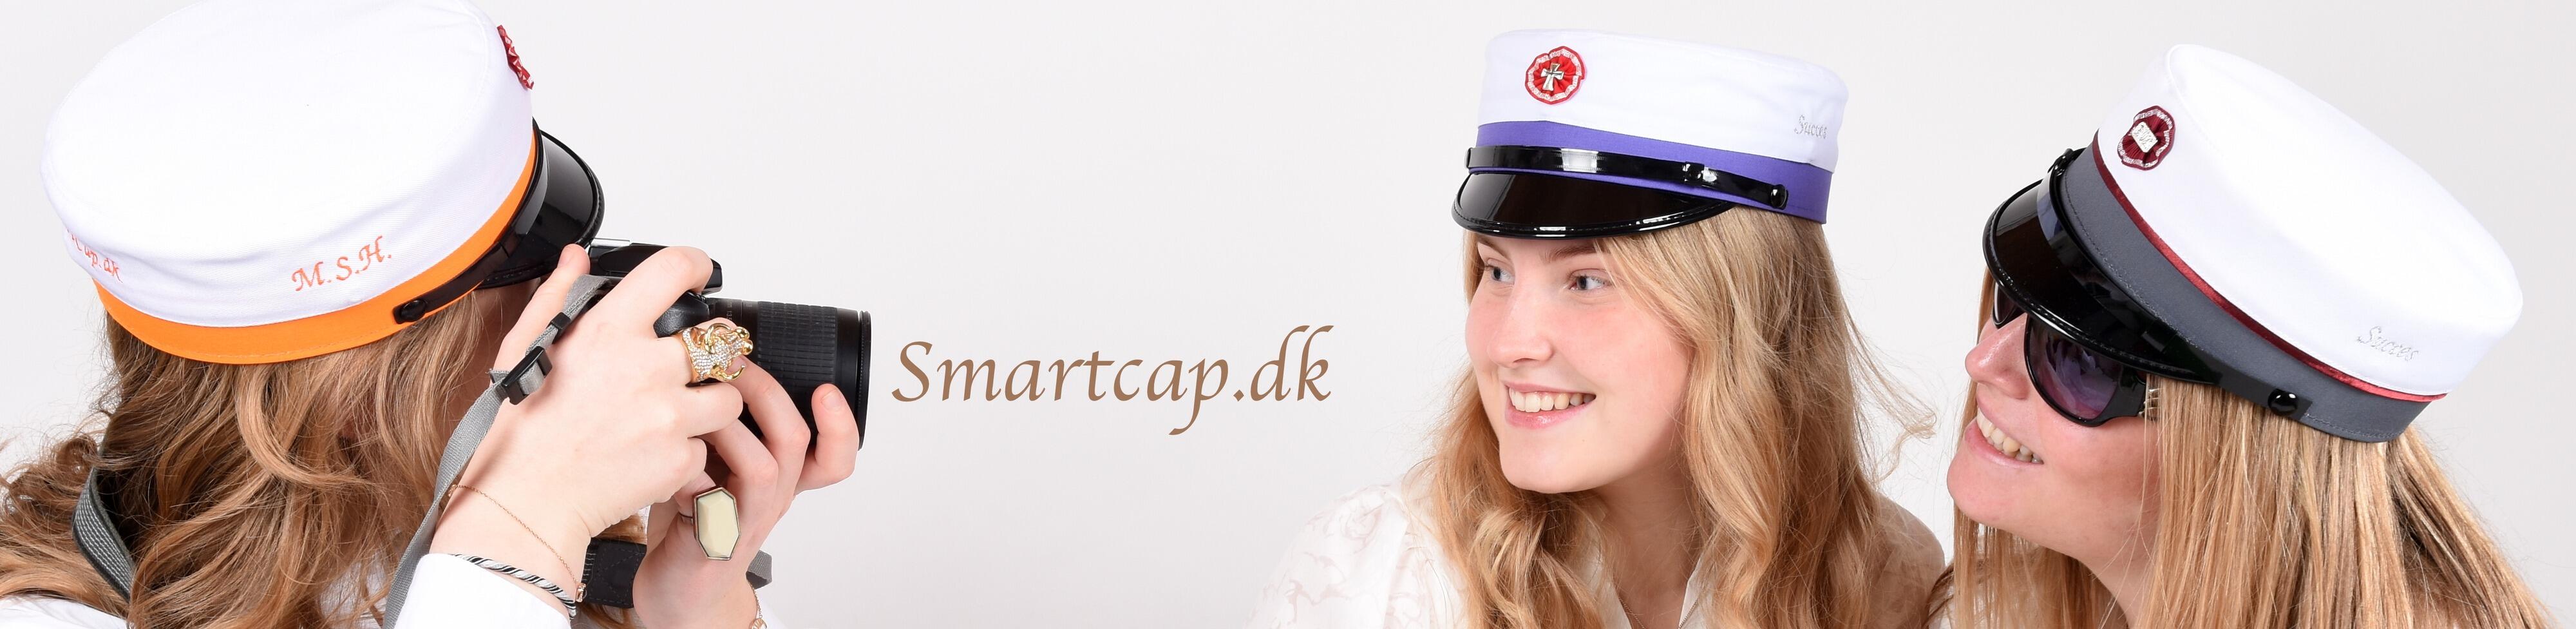 SmartCap.dk - Salg af Studenterhuer & Uddannelses Huer